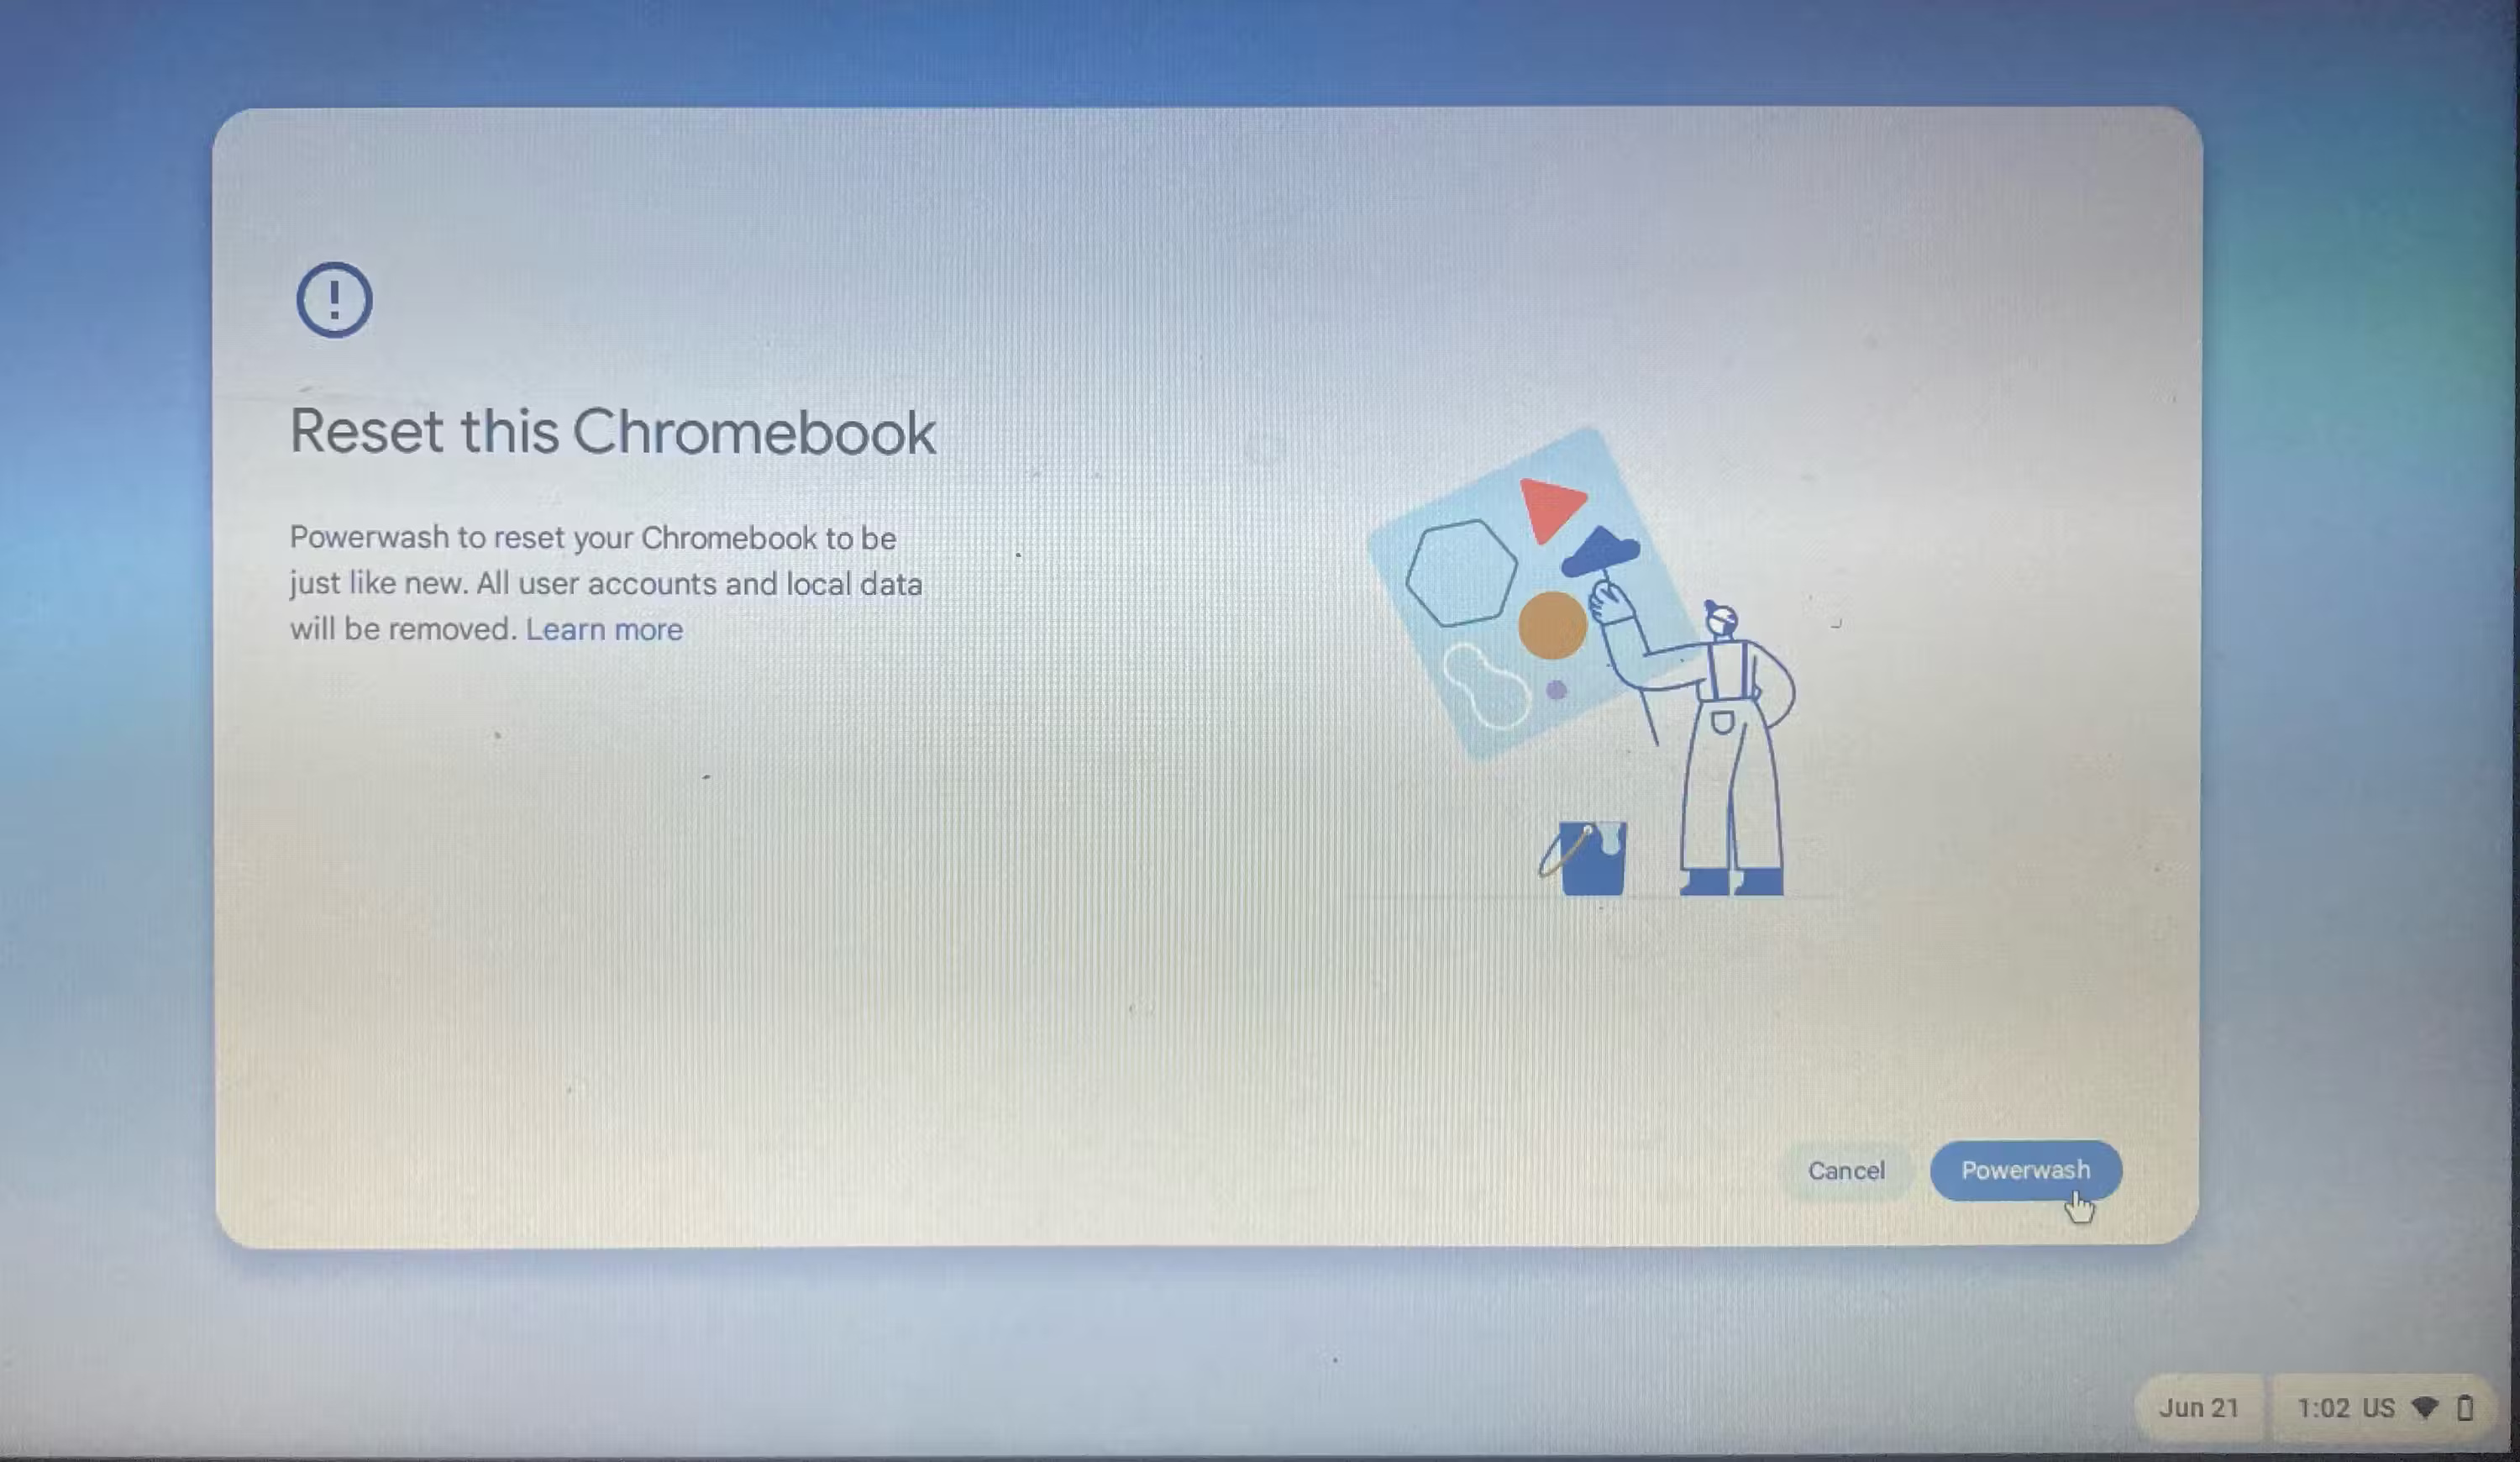 Khôi phục cài đặt gốc cho Chromebook mà không đăng nhập